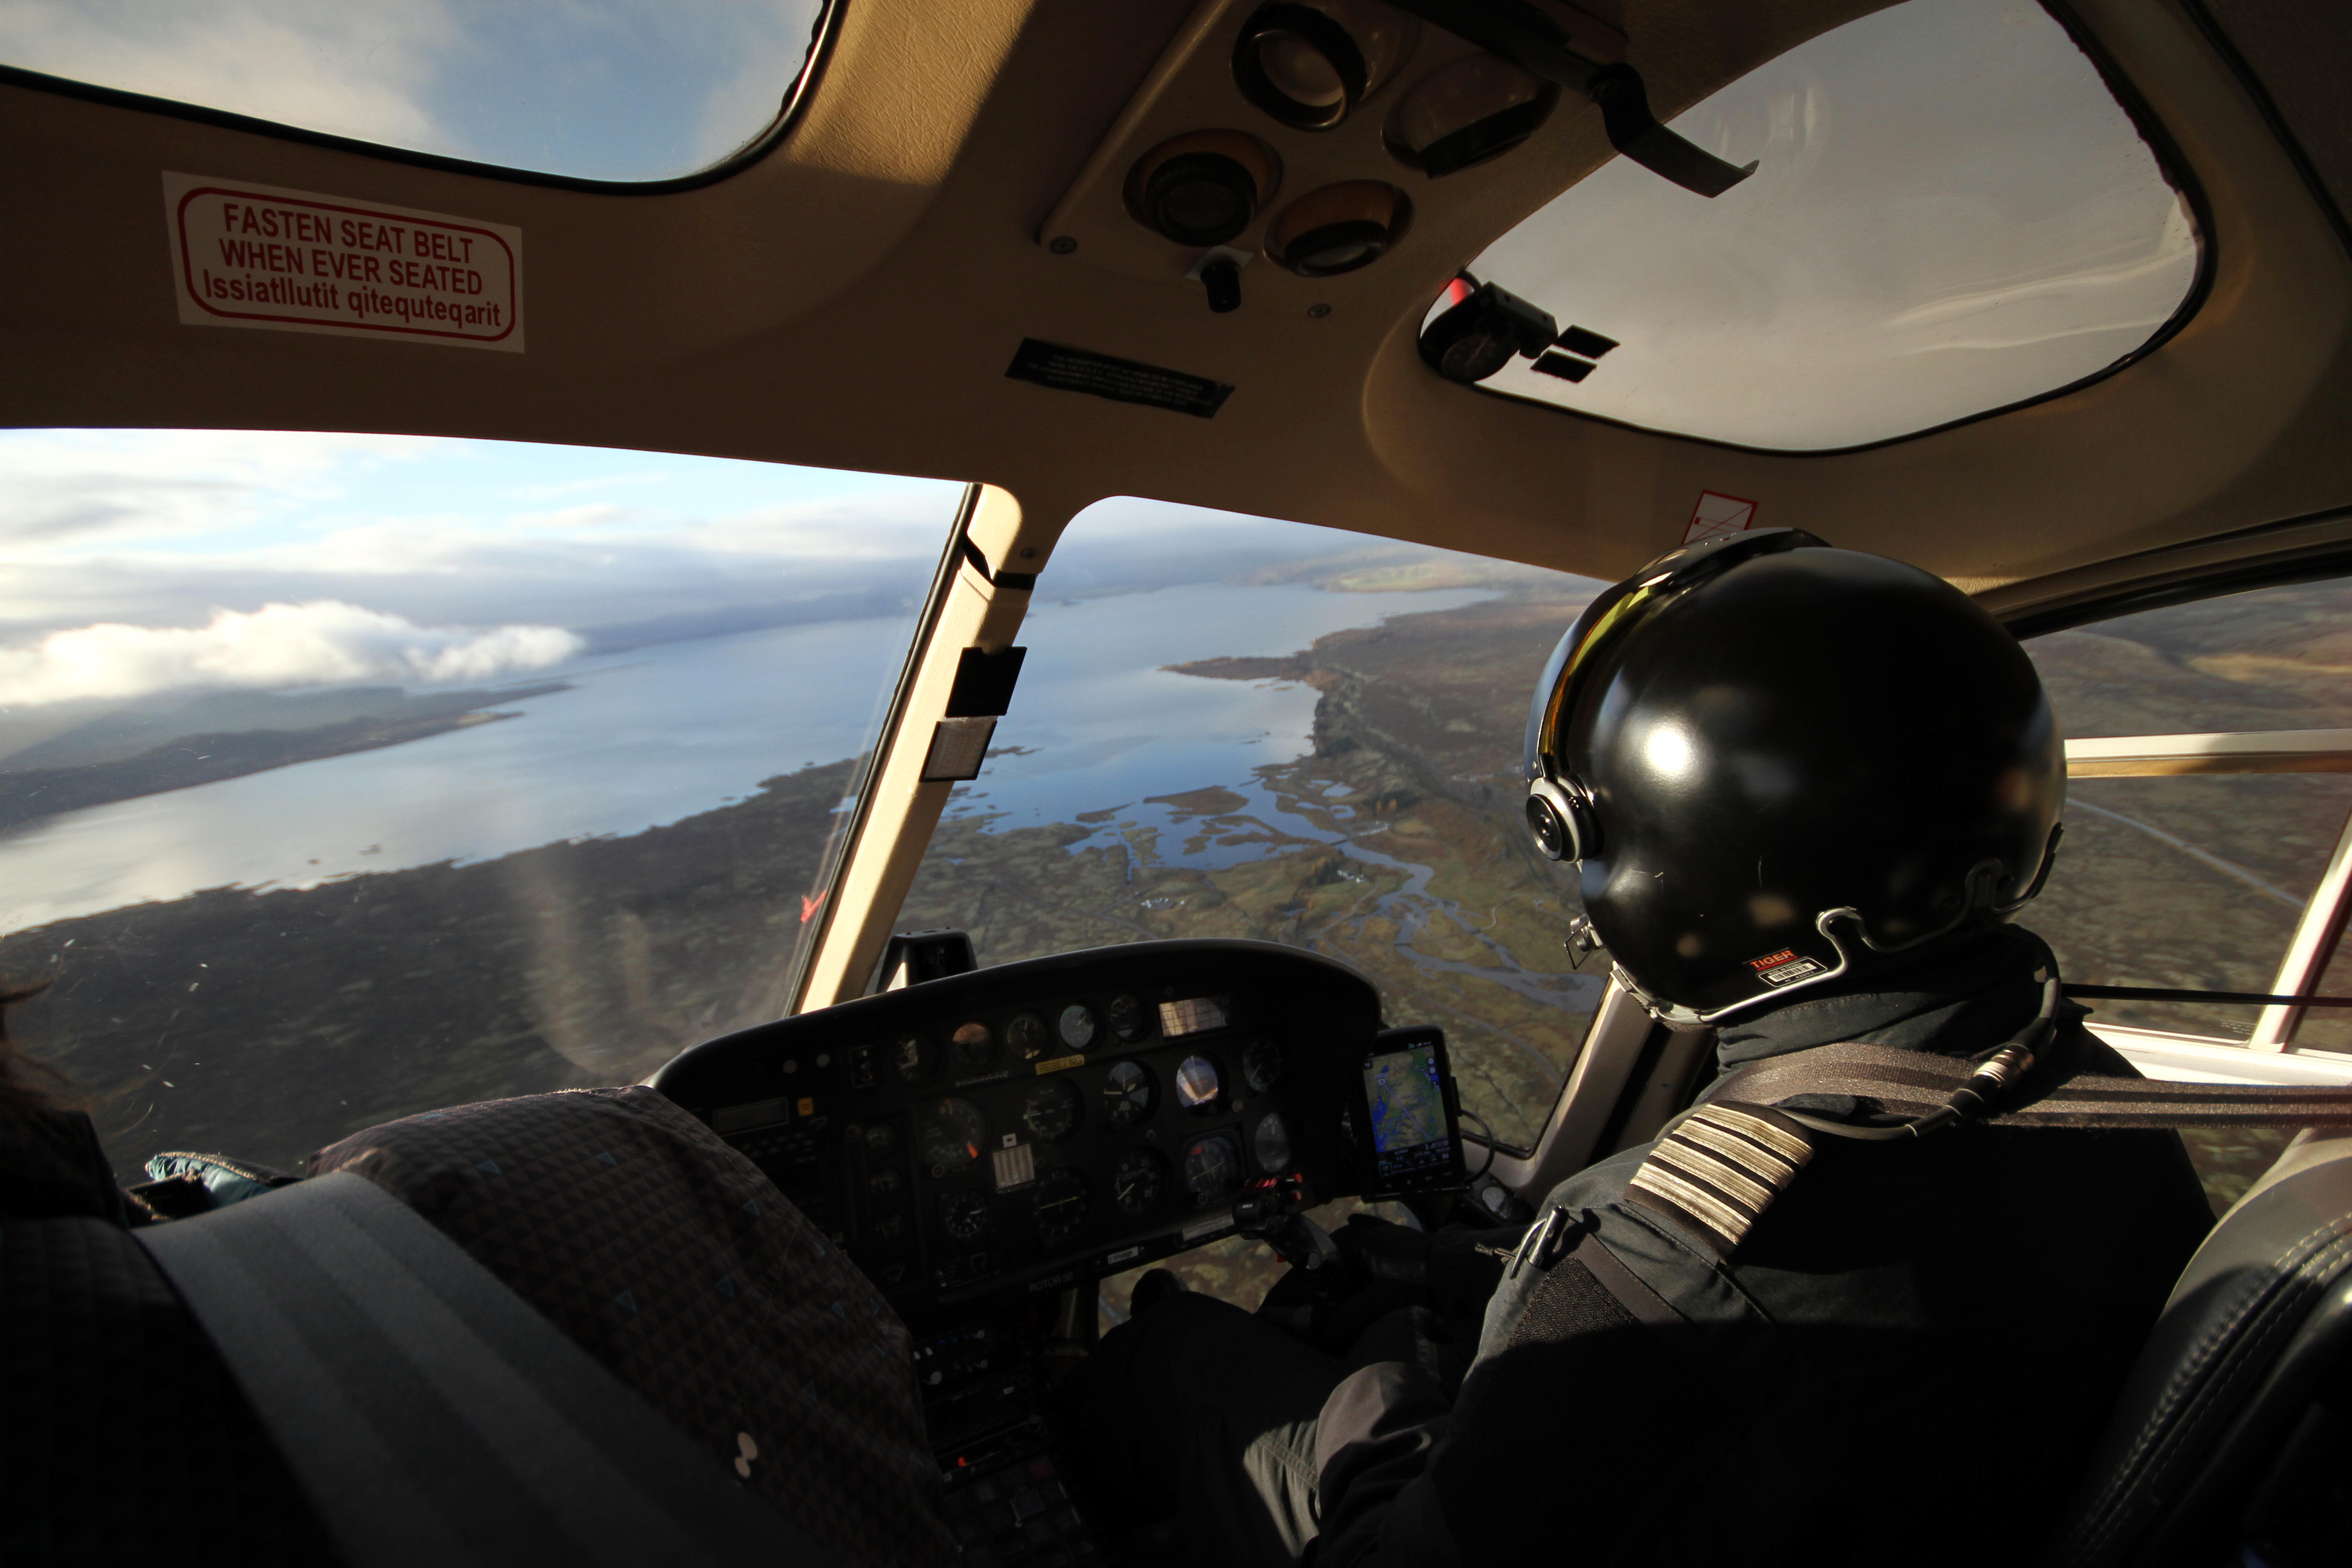 Island Rundflug Hubschrauber Helicopter Flight